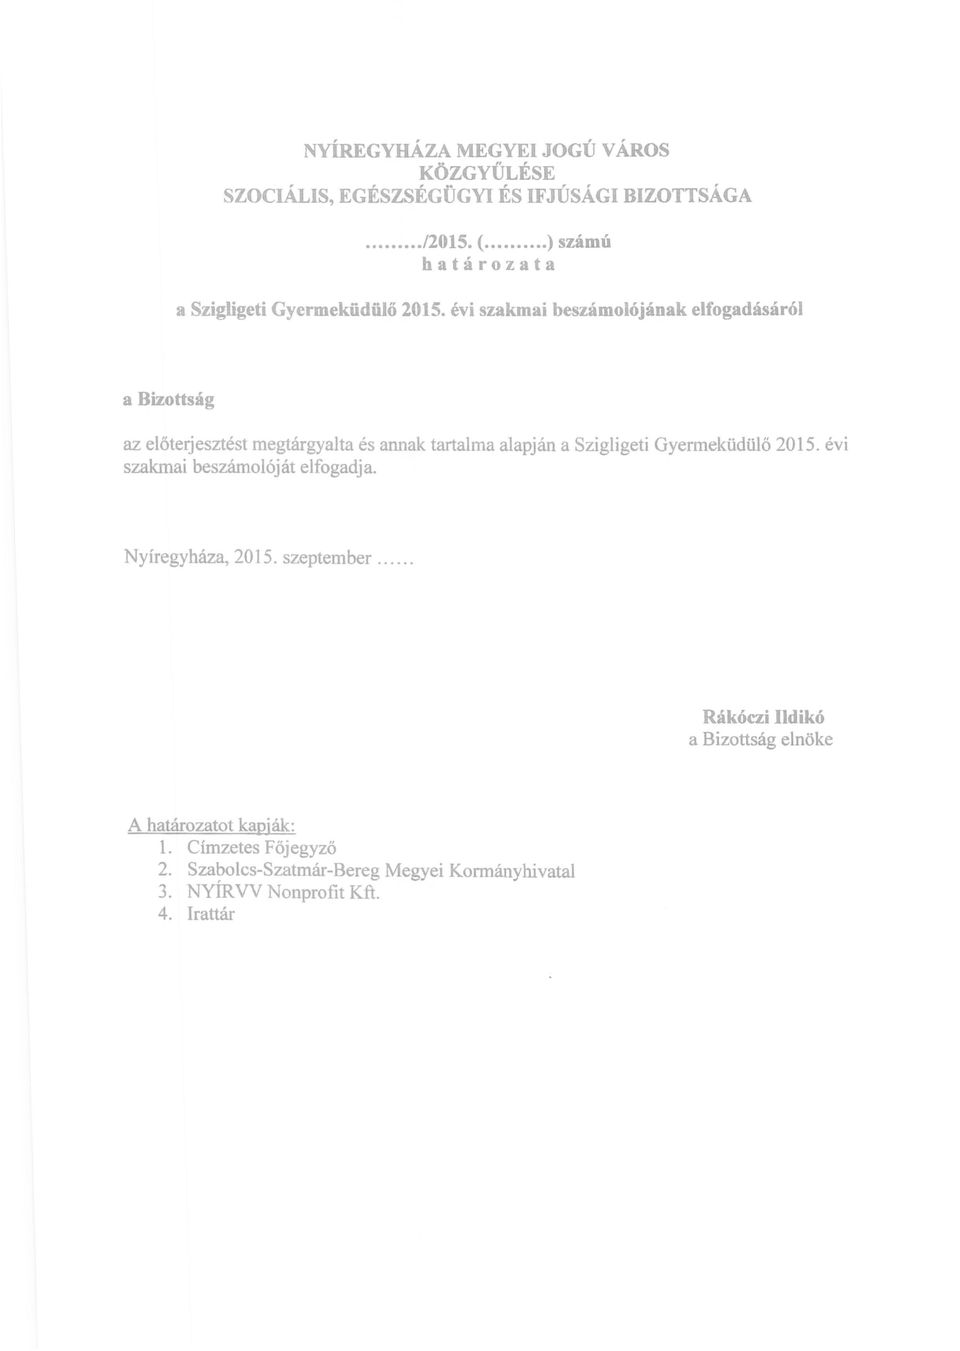 évi szakmai beszámolójának elfogadásáról a Bizottság az előterjesztést megtárgyalta és annak tartalma alapján a Szigligeti